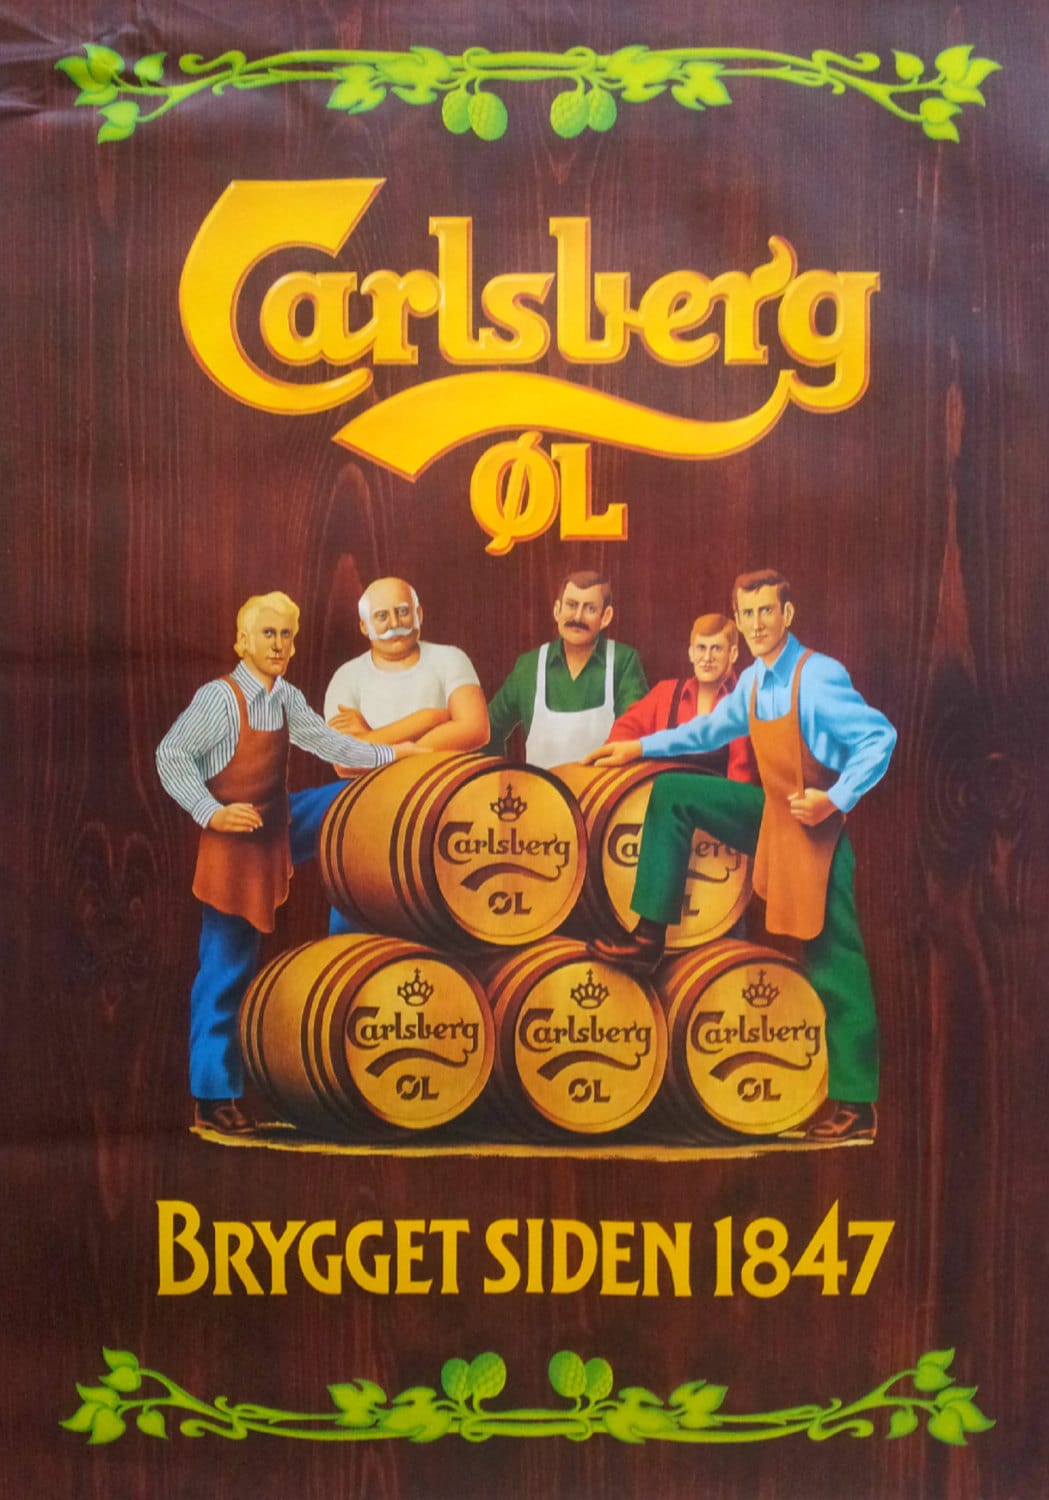 1970s Carlsberg Beer Advertisement - Original Vintage Poster